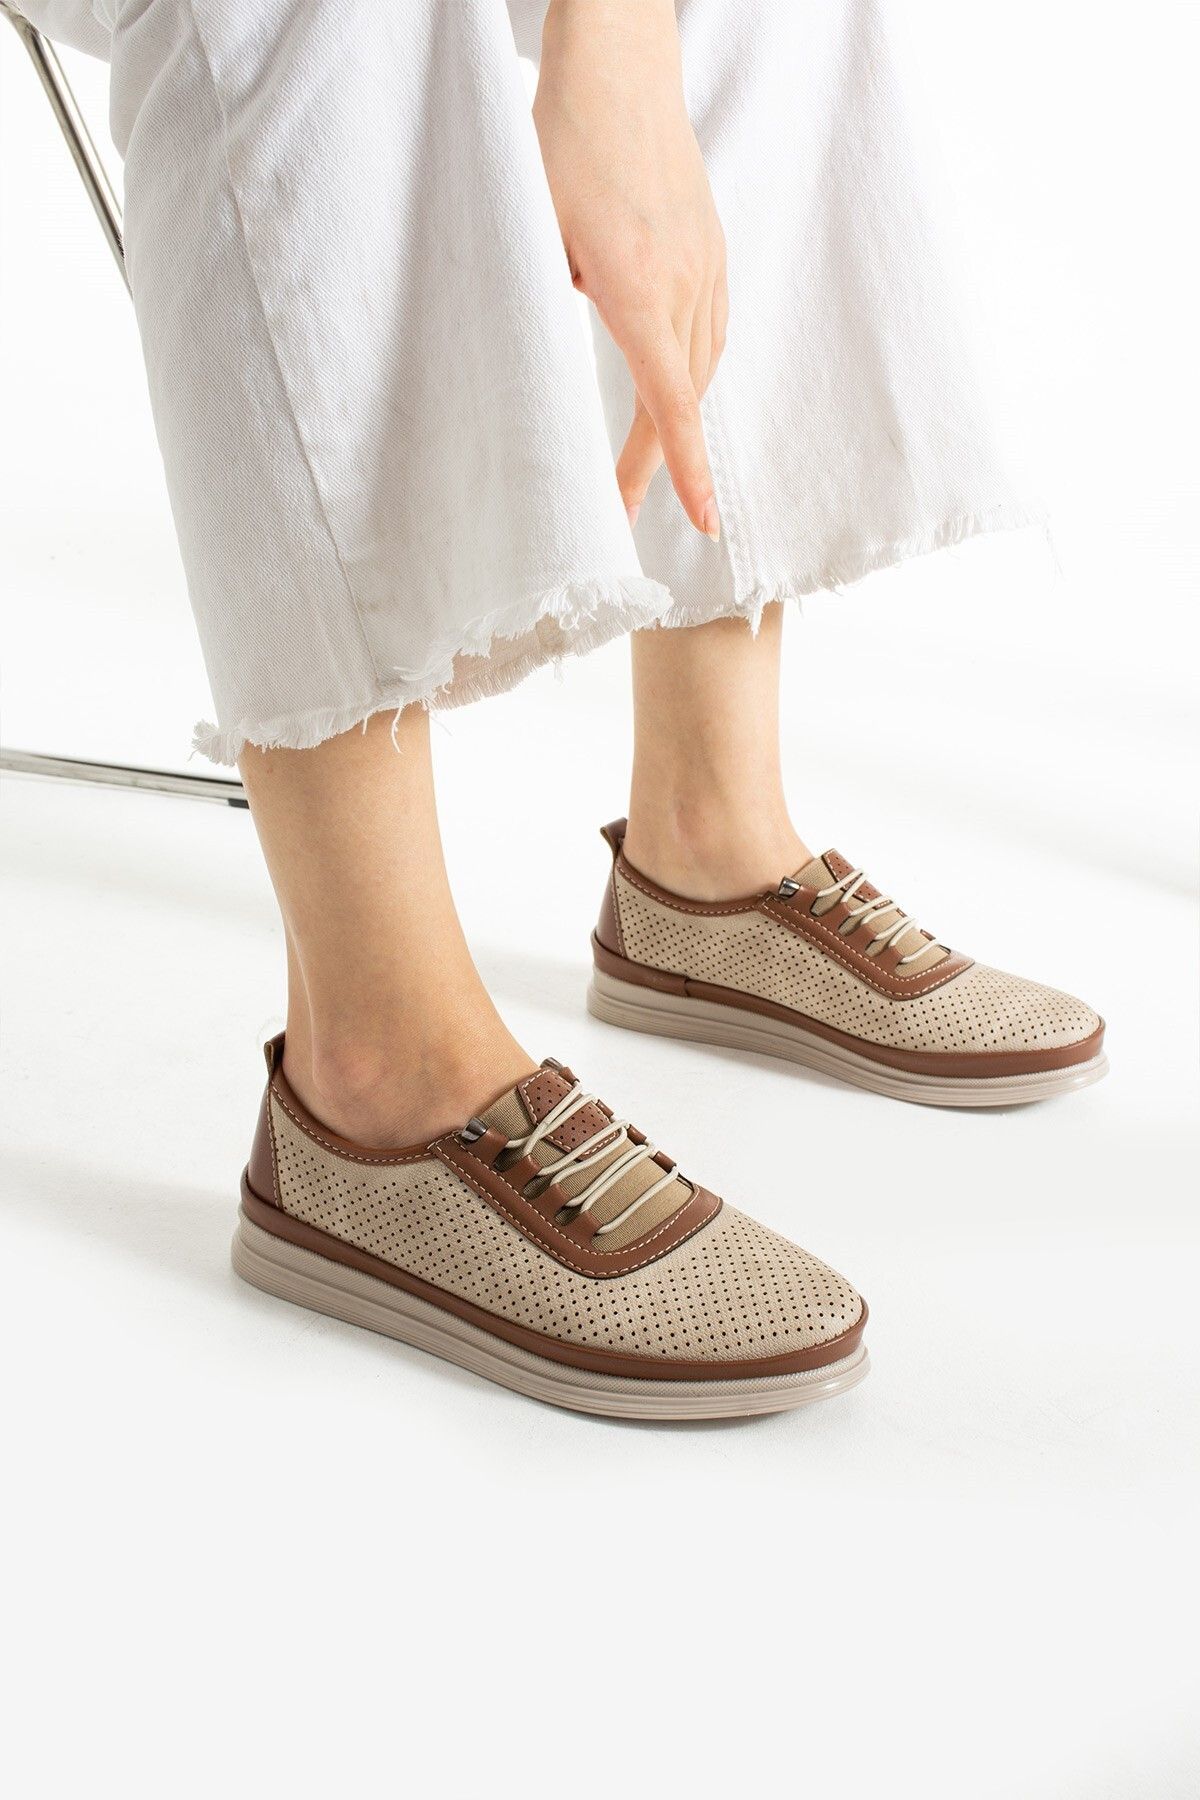 HKM shoes Yeni Sezon Kadın Günlük Hafif Mevsimlik  Rahat Tam Ortopedik Bağcıklı Babet Ayakkabı